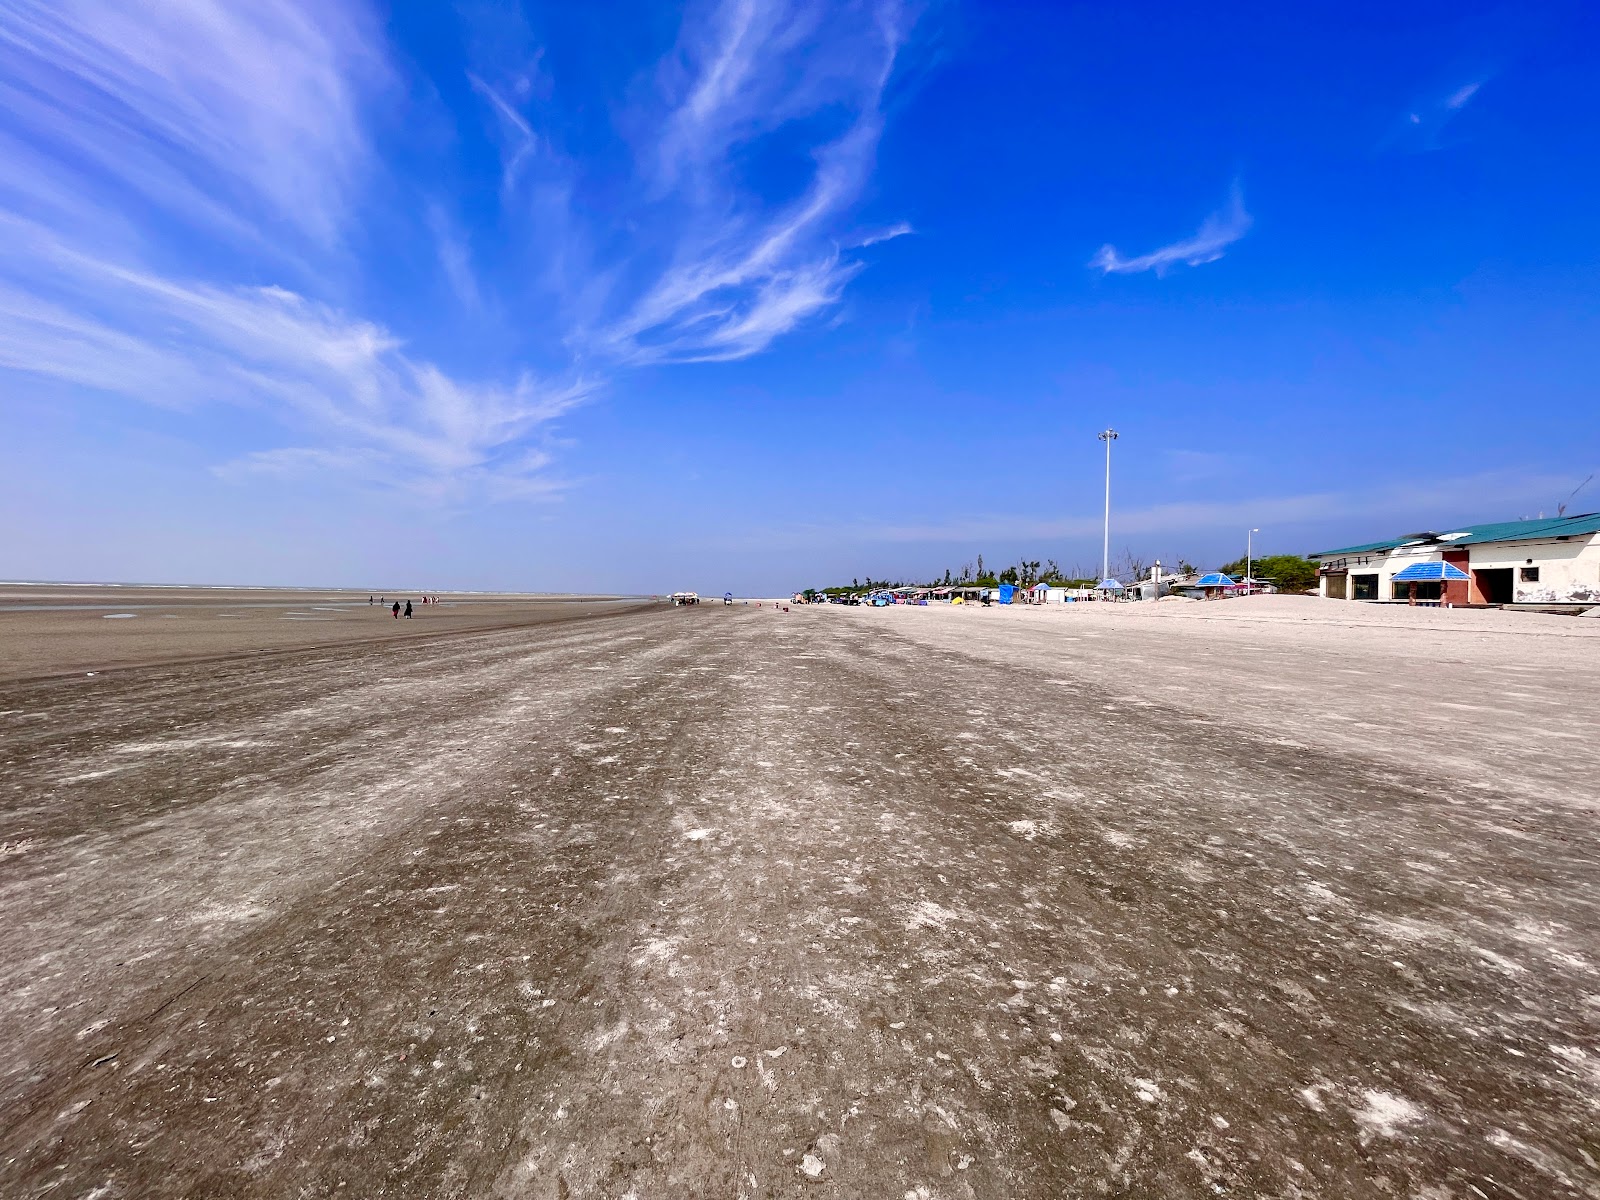 Zdjęcie BakKhali Sea Beach z powierzchnią jasny piasek